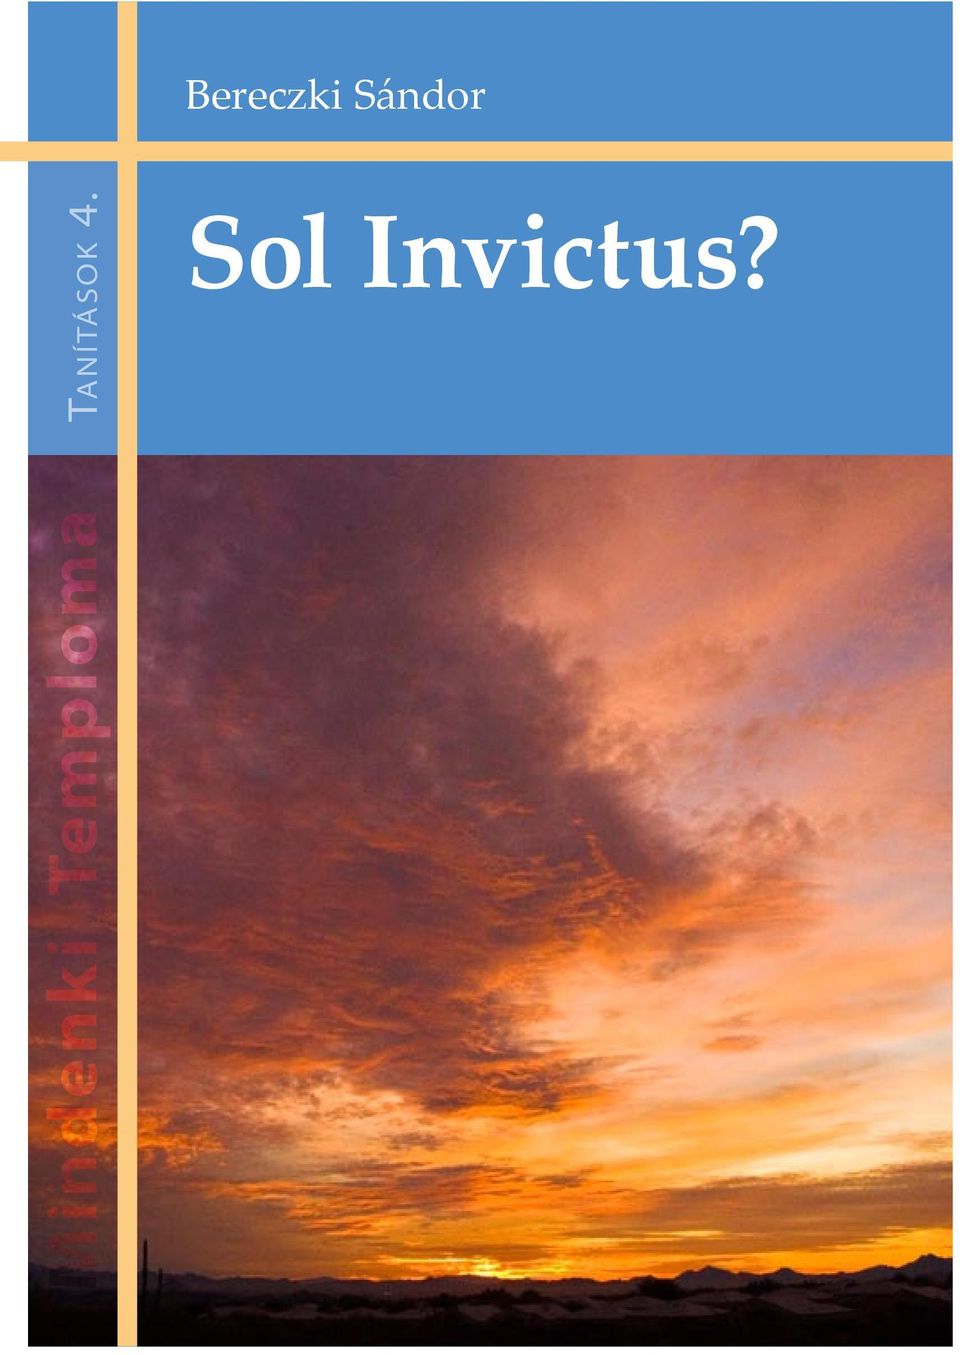 4. Sol Invictus?